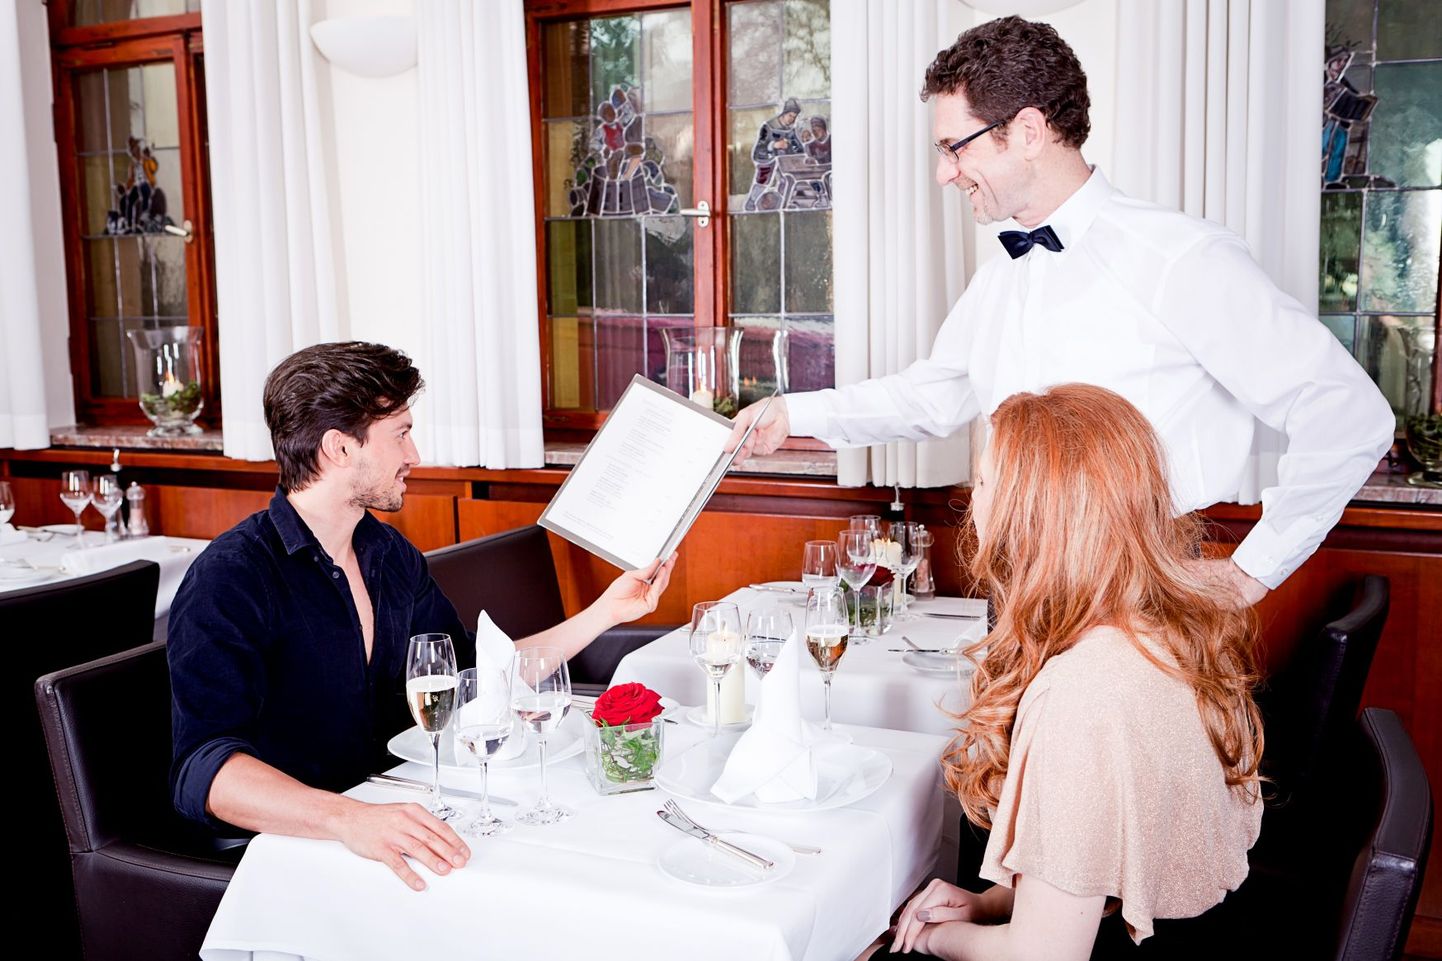 Professionaalne kelner on viisakas ja enesekindel ning saab kenasti suheldud kõigi klientidega.